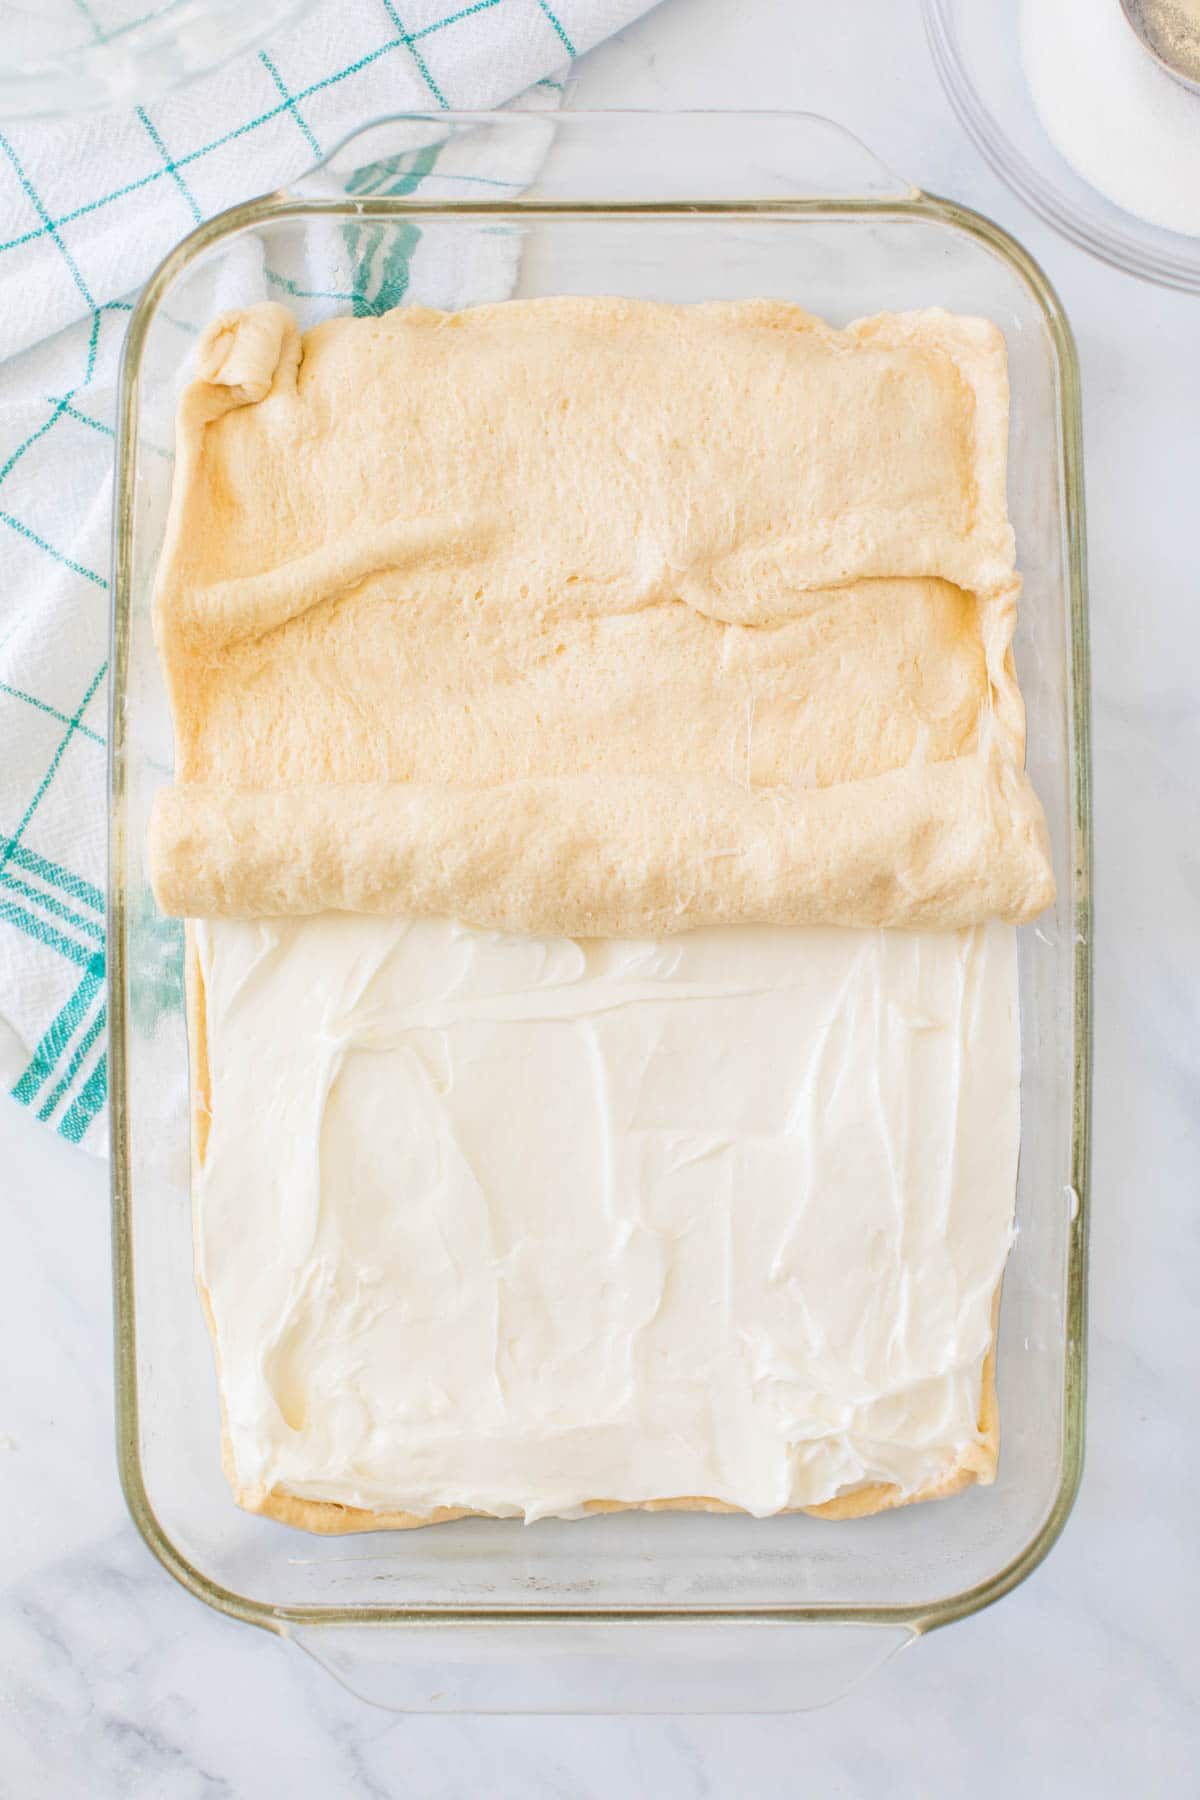 Rotlle de mitja lluna que es posa sobre la crema de formatge en un plat de forn